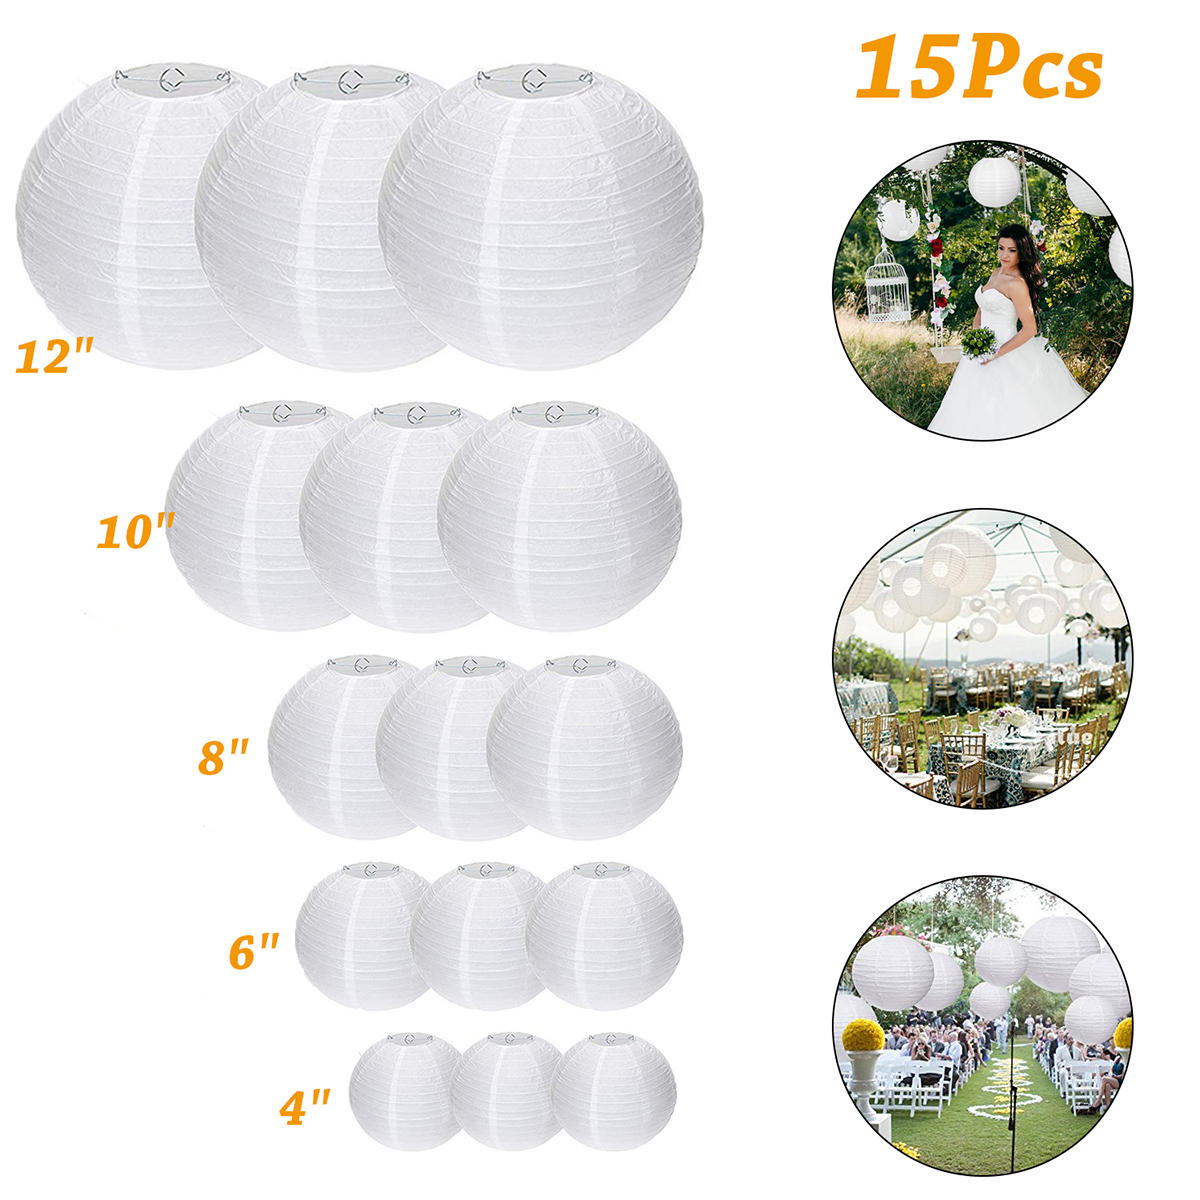 15-packs Witte ronde papieren lantaarns met verschillende maten voor bruiloftsdecoraties